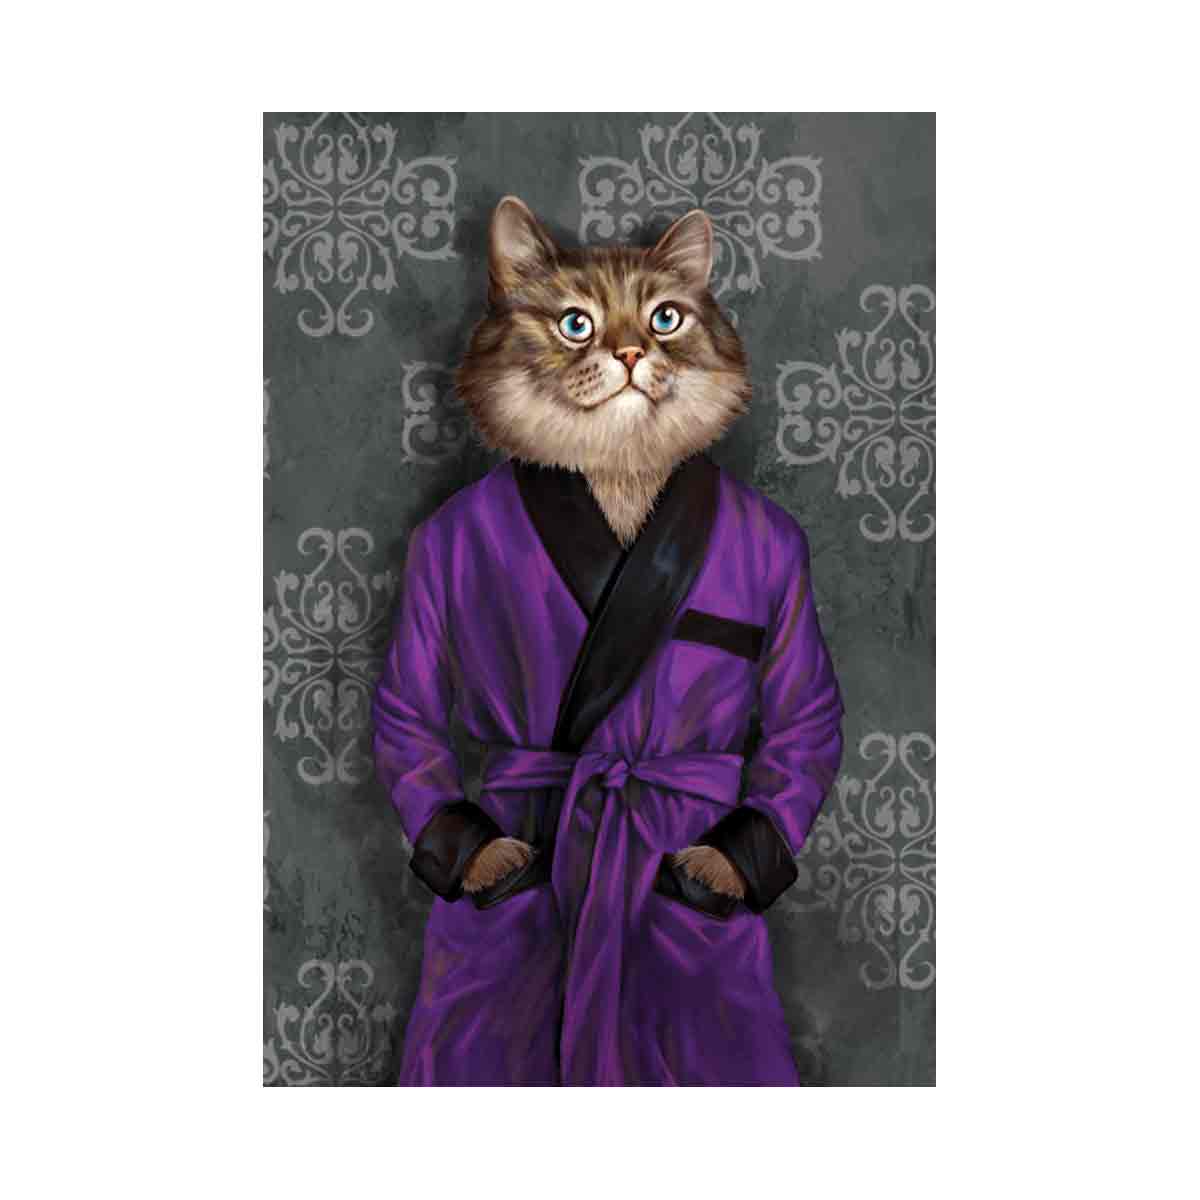 Cat in robe 